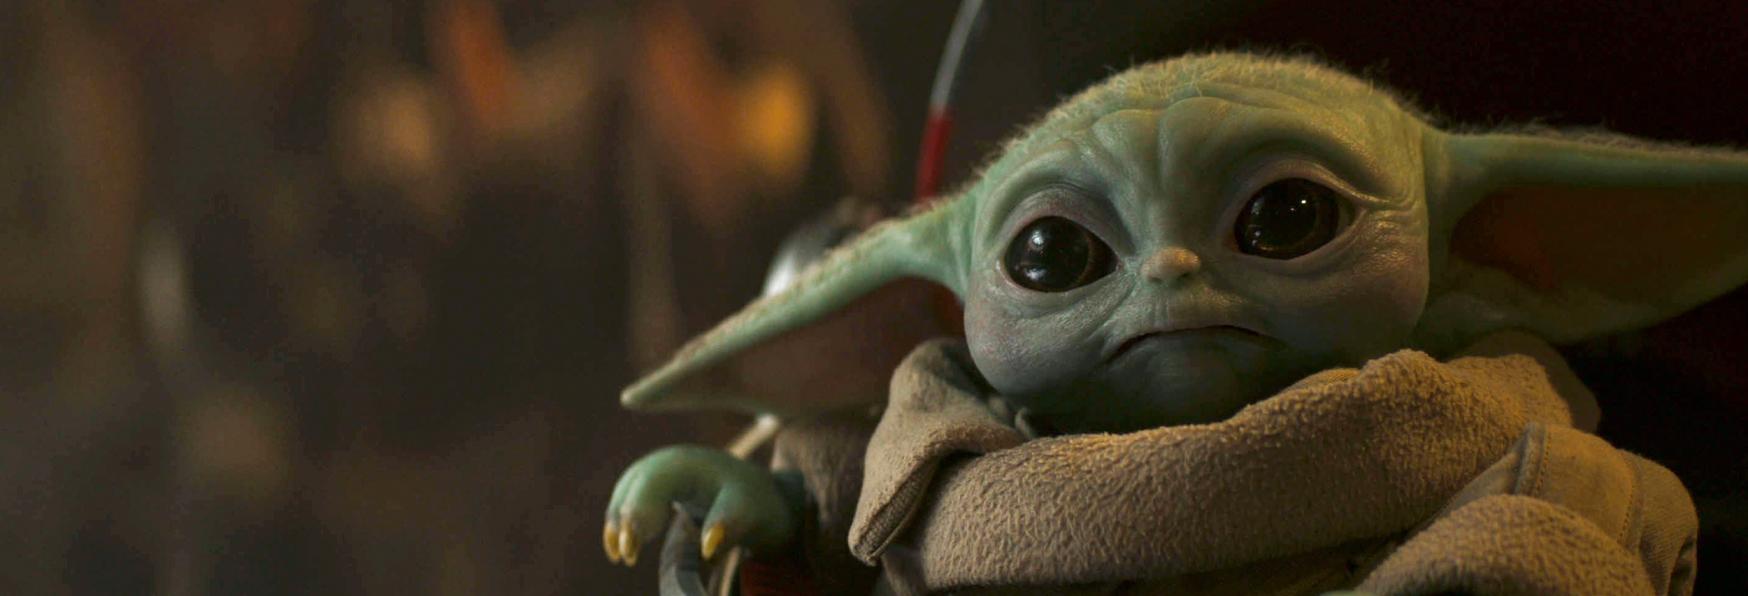 The Mandalorian 3: il Trailer della nuova Stagione stabilisce un Record per Star Wars